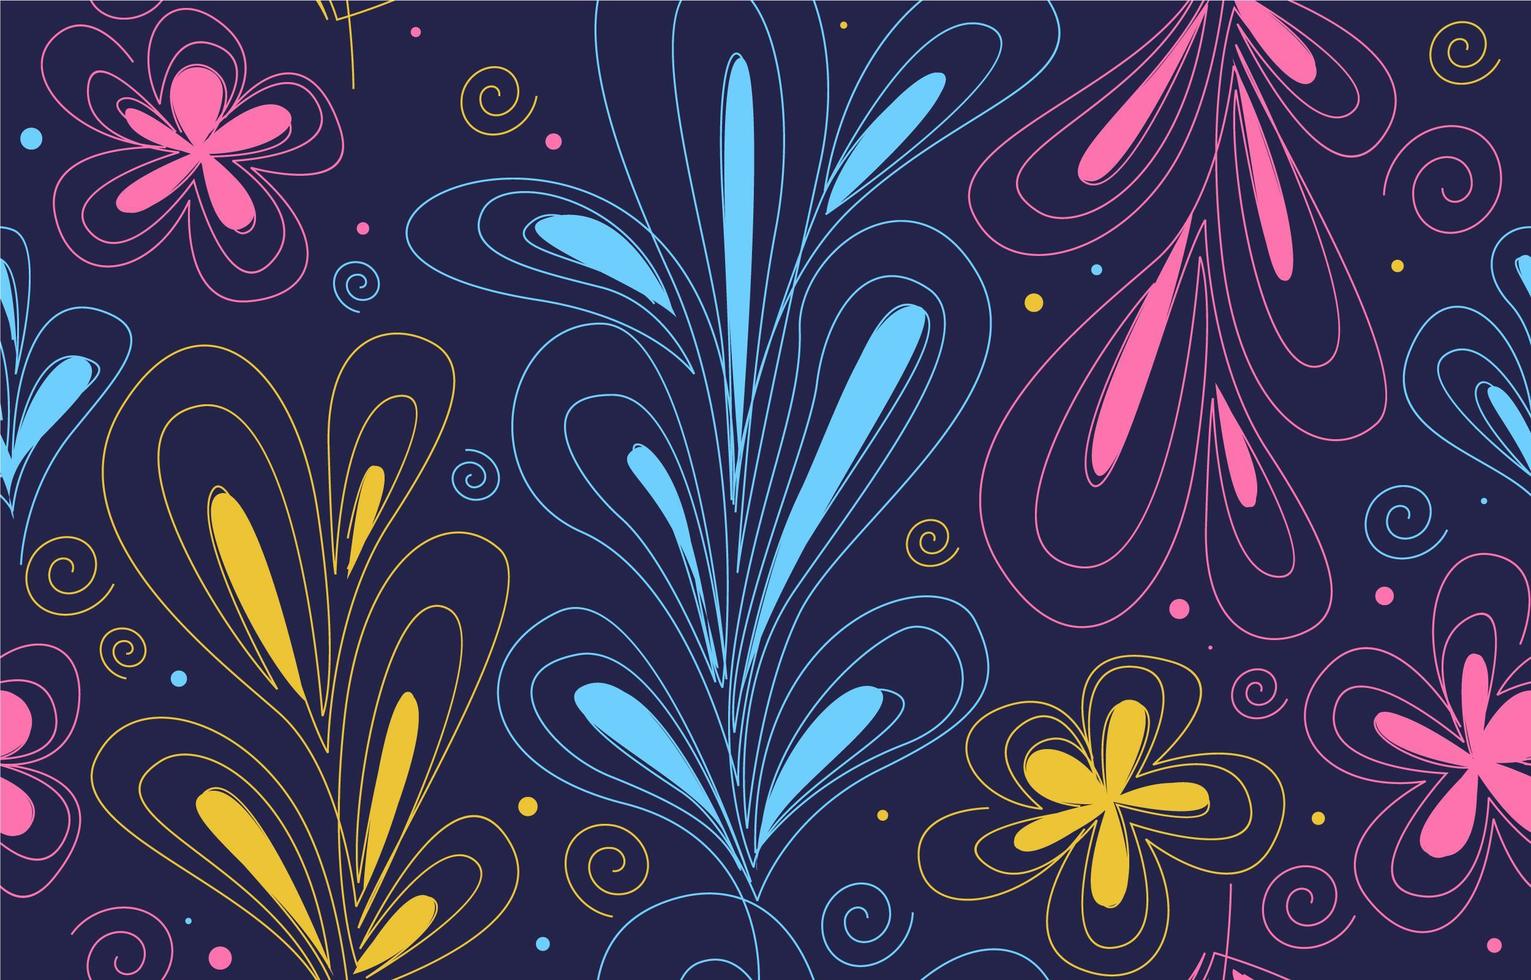 kleurrijke één lijntekeningen bladeren en bloemen naadloos patroon vector